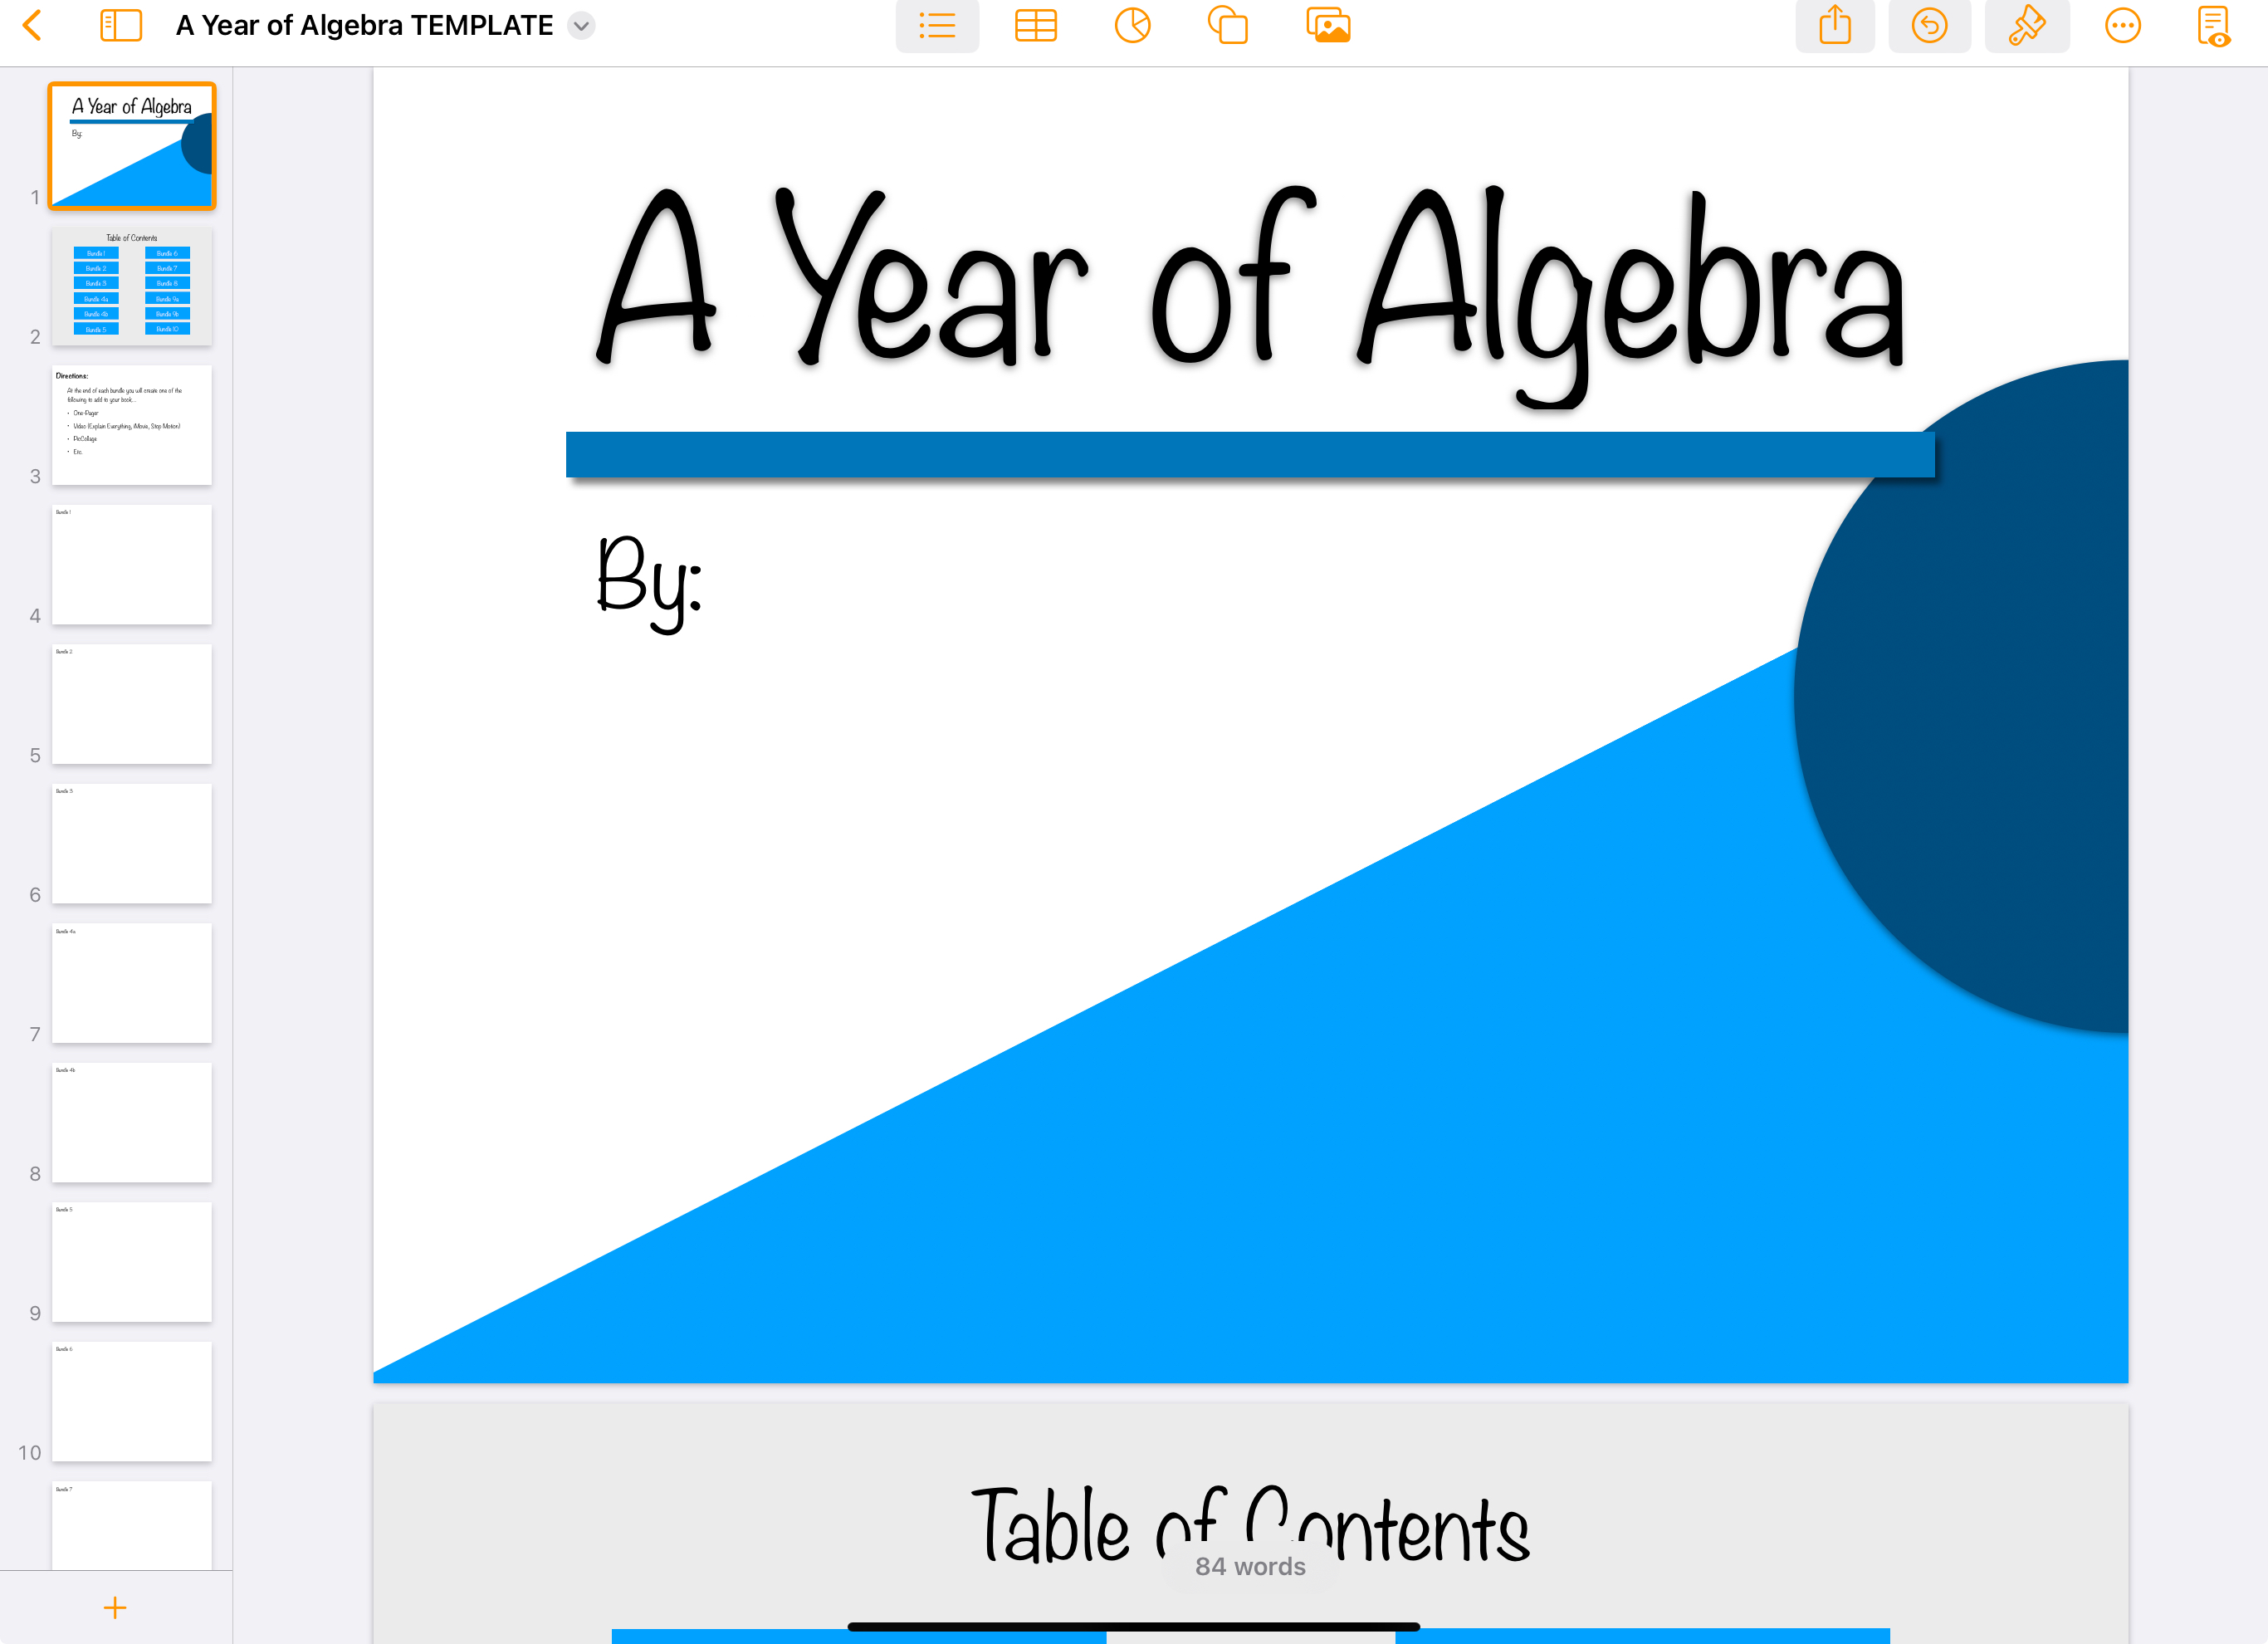 A Year of Algebra